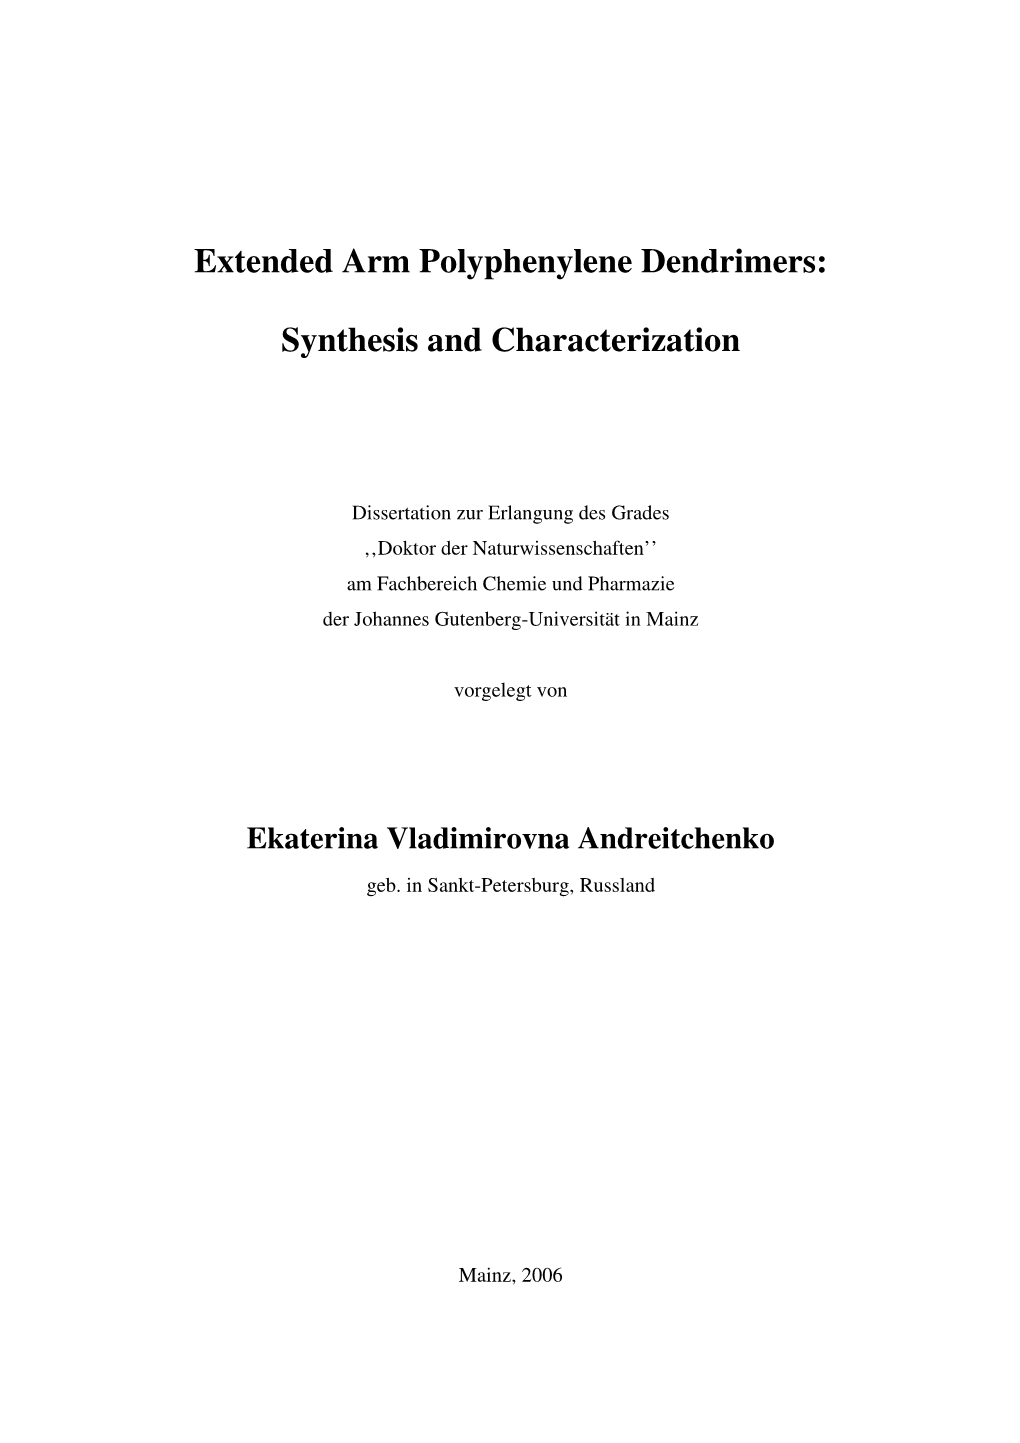 EV Andreitchenko's Dissertation, Mainz 2006